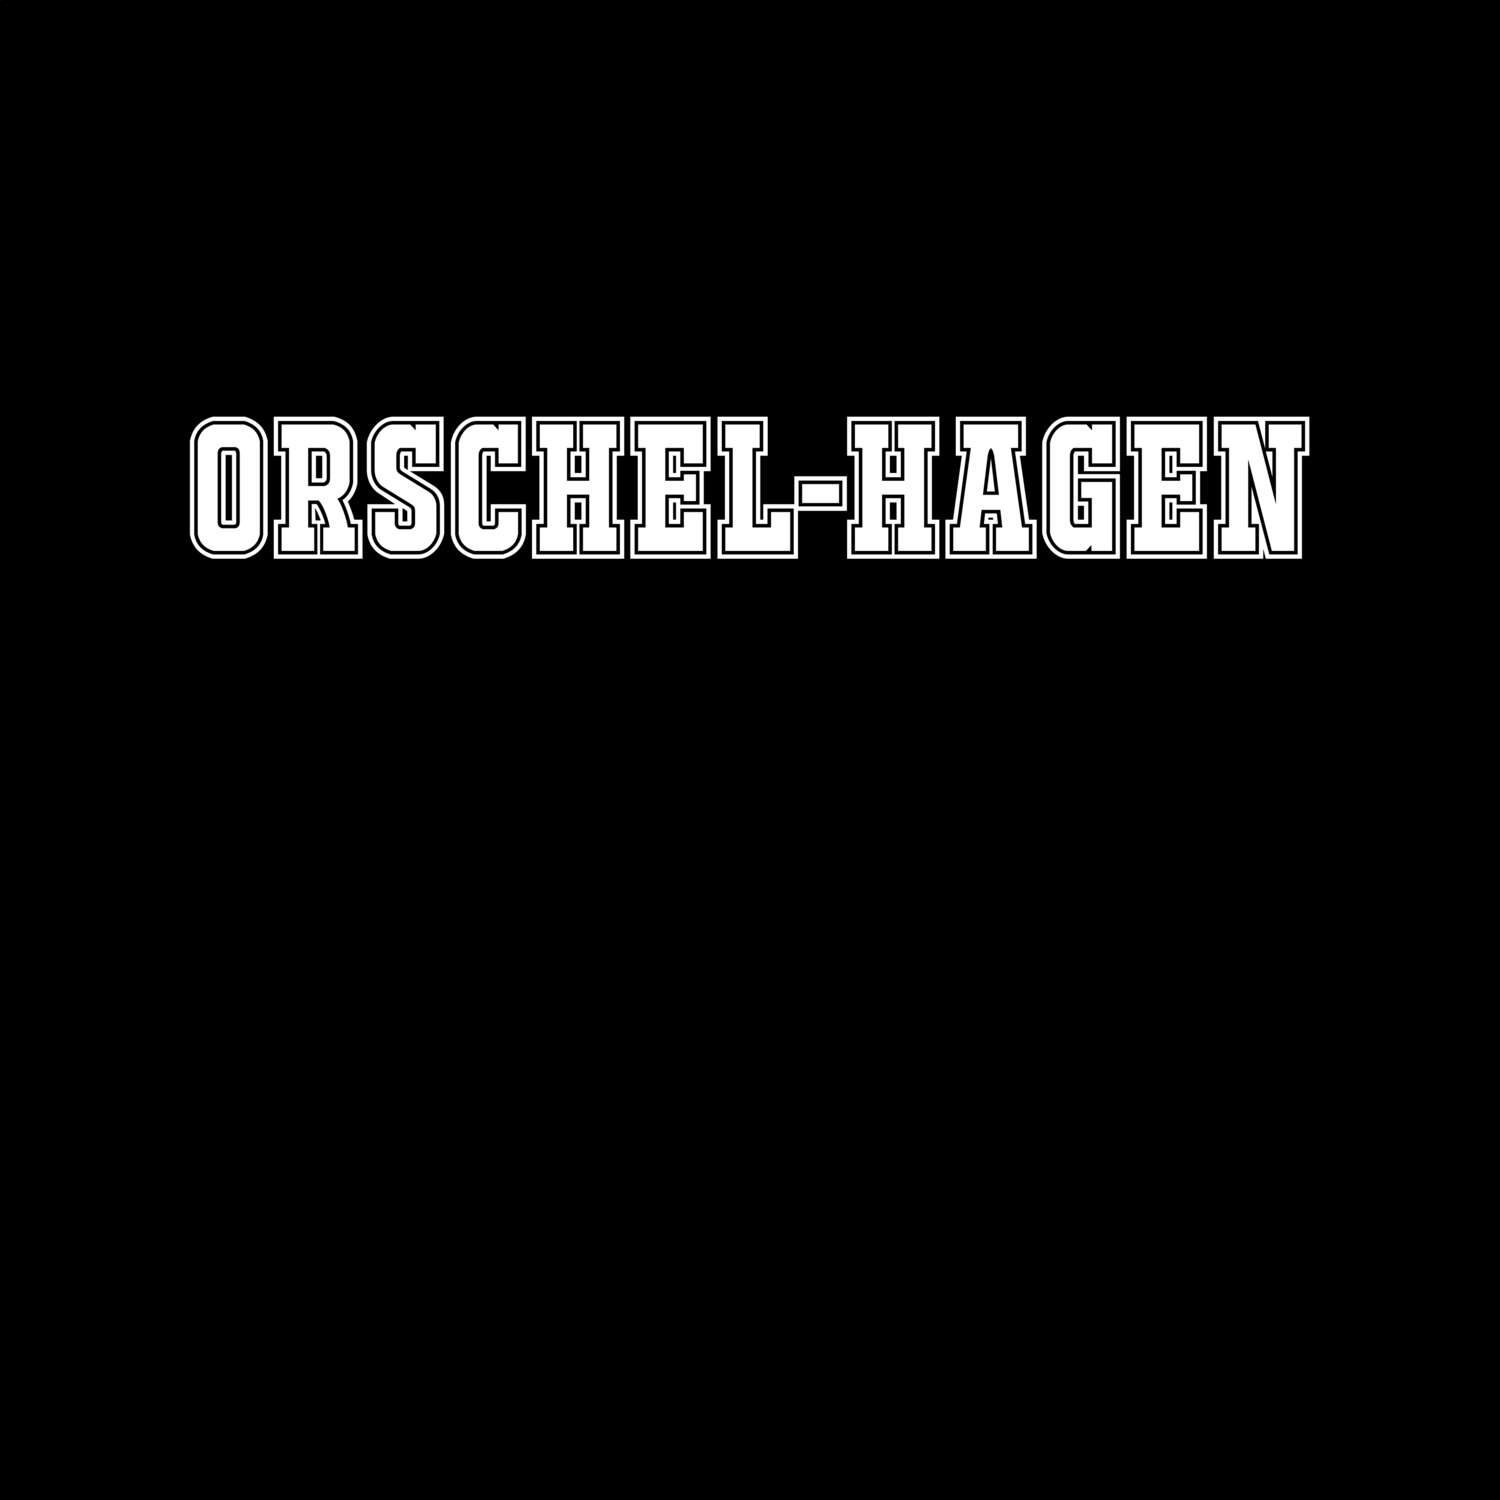 Orschel-Hagen T-Shirt »Classic«